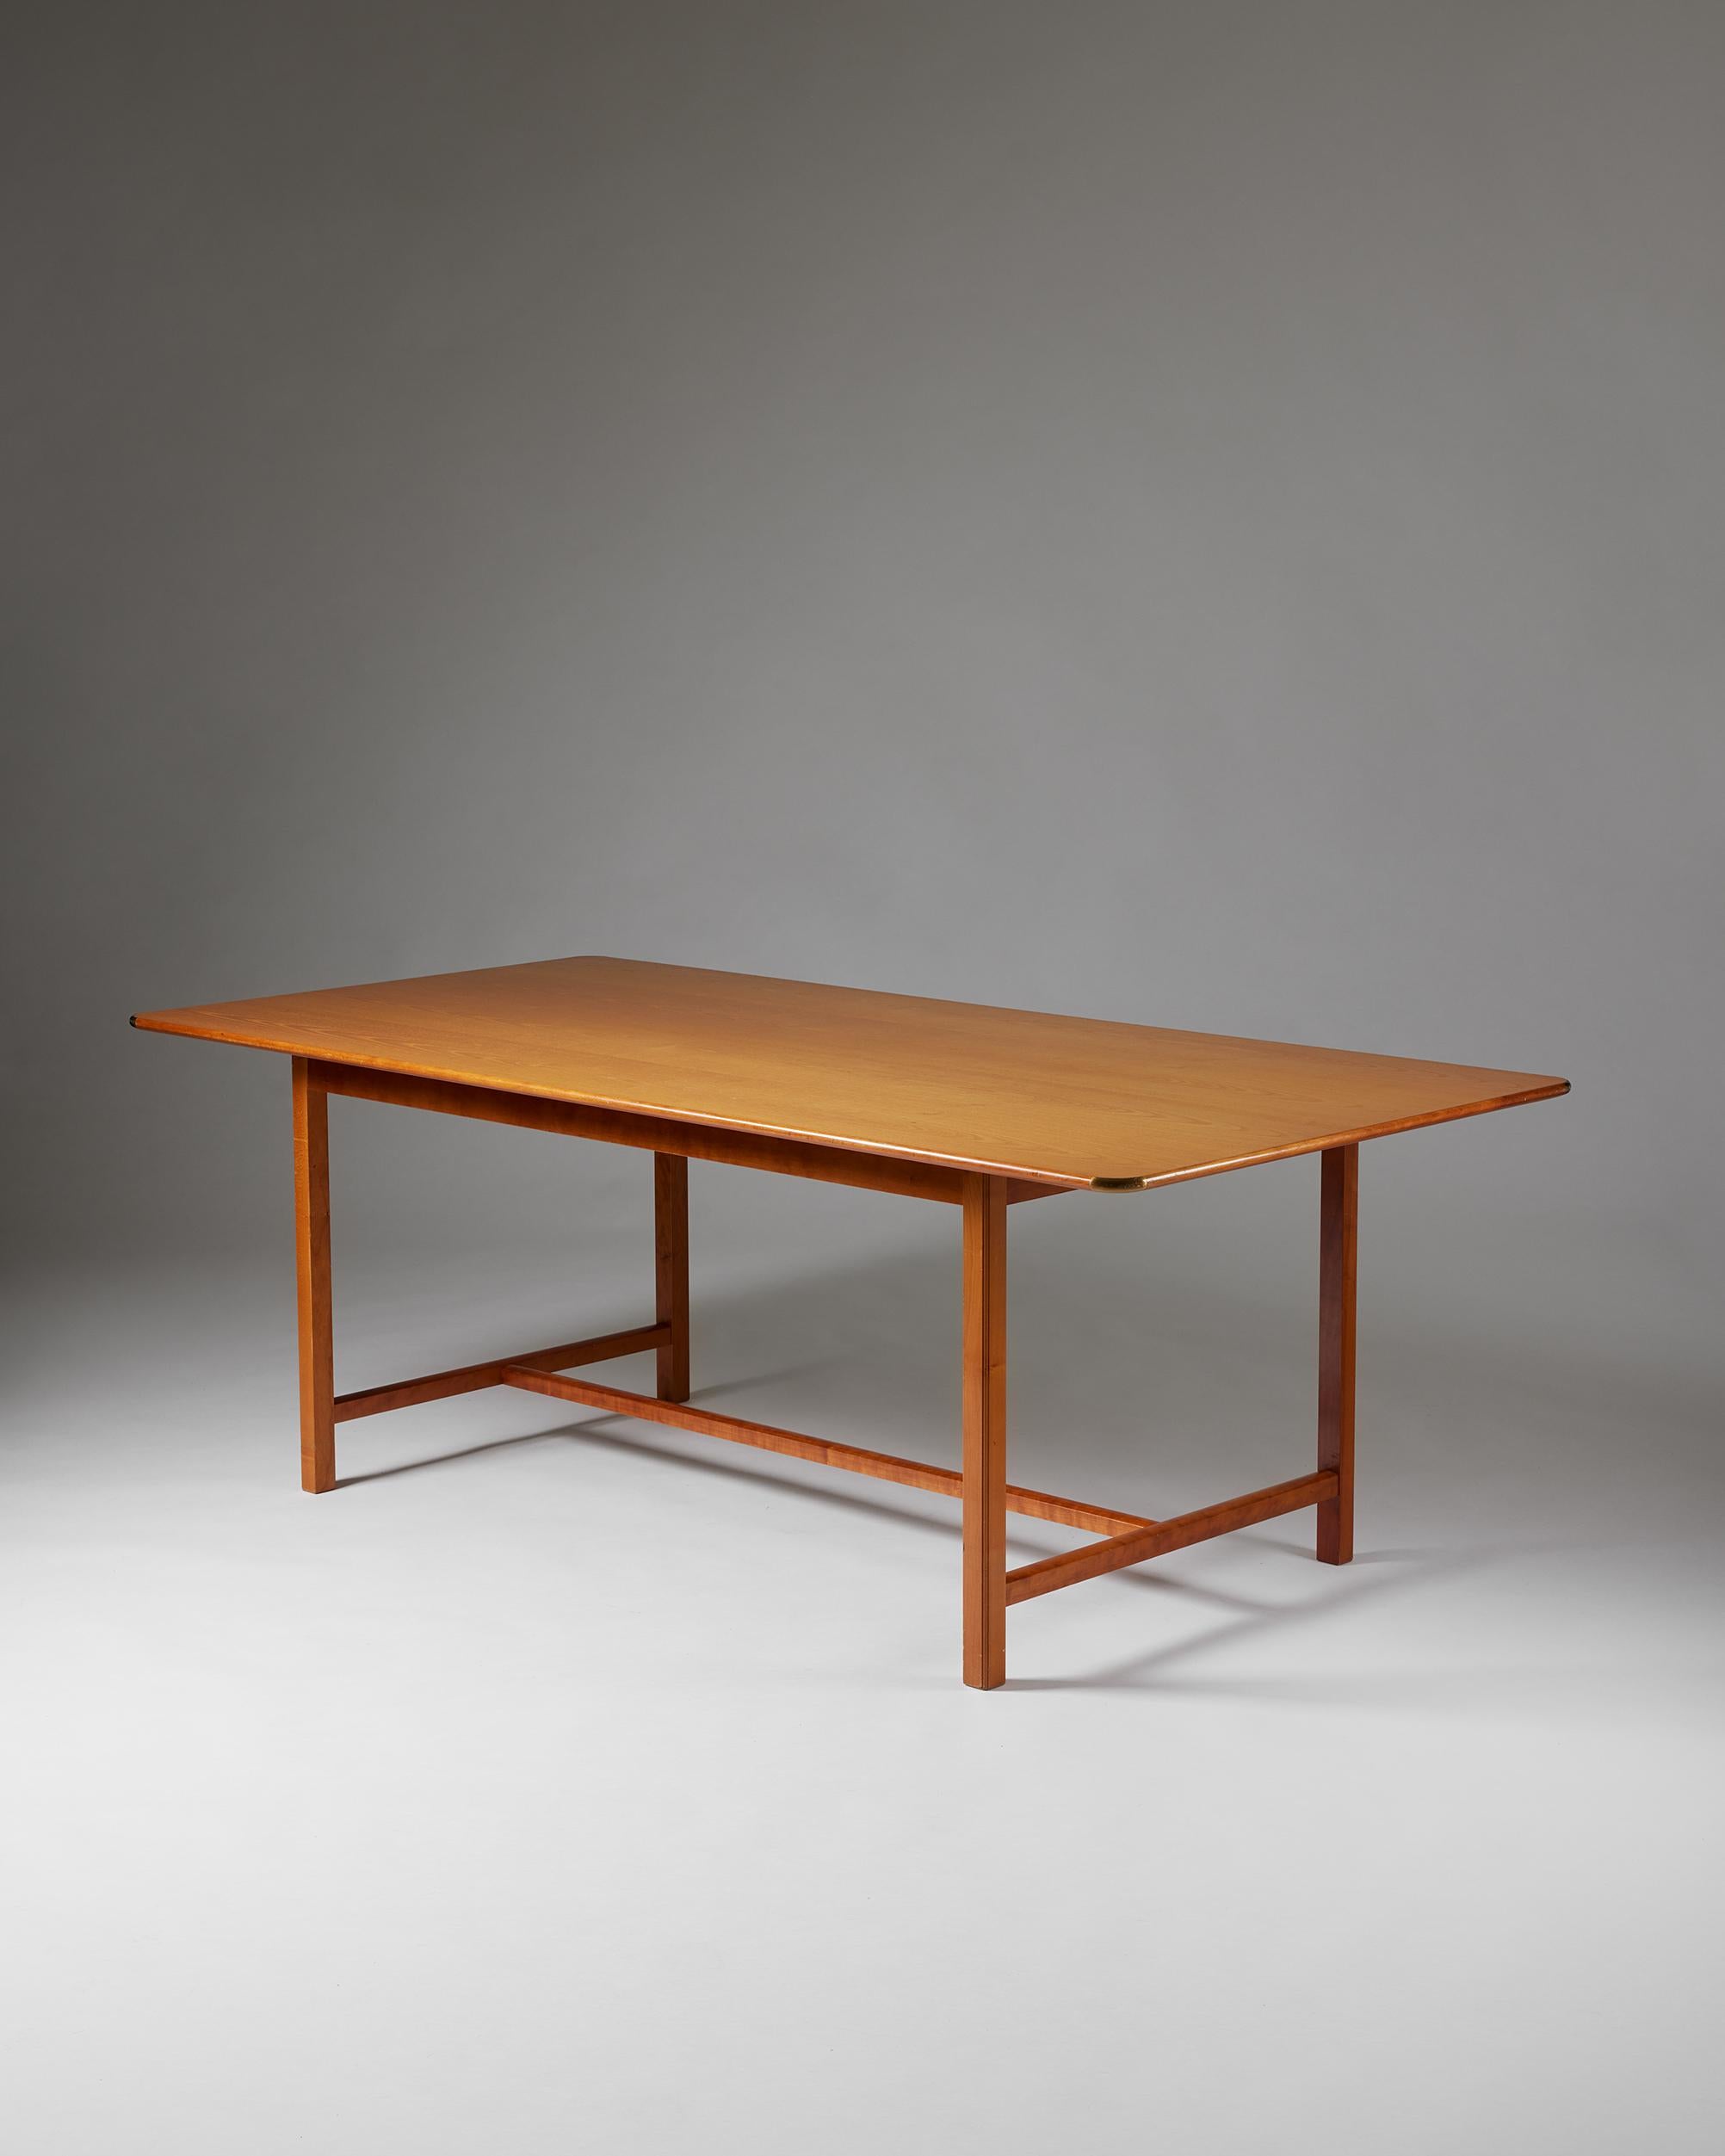 Tisch Modell 590, entworfen von Josef Frank für Svenskt Tenn,
Schweden, 1950er Jahre.

Tischplatte aus Ulme, Sockel aus Kirsche und Messing.

Gestempelt.

Josef Frank war ein echter Europäer und ein Pionier des klassischen schwedischen Designs des